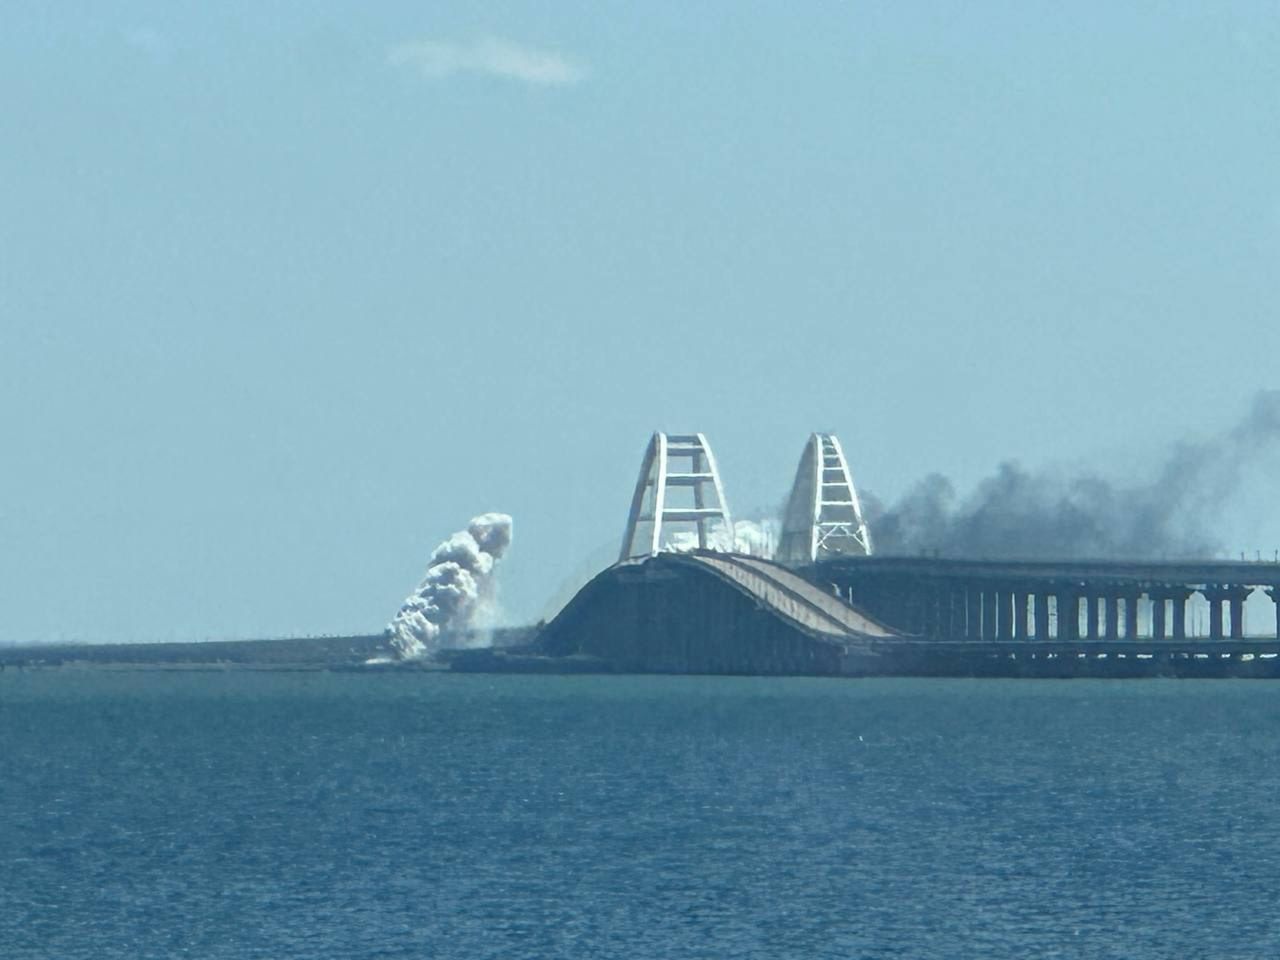 Gigantyczny korek na moście Krymskim. Na odprawę czeka 1300 samochodów [RELACJA NA ŻYWO]